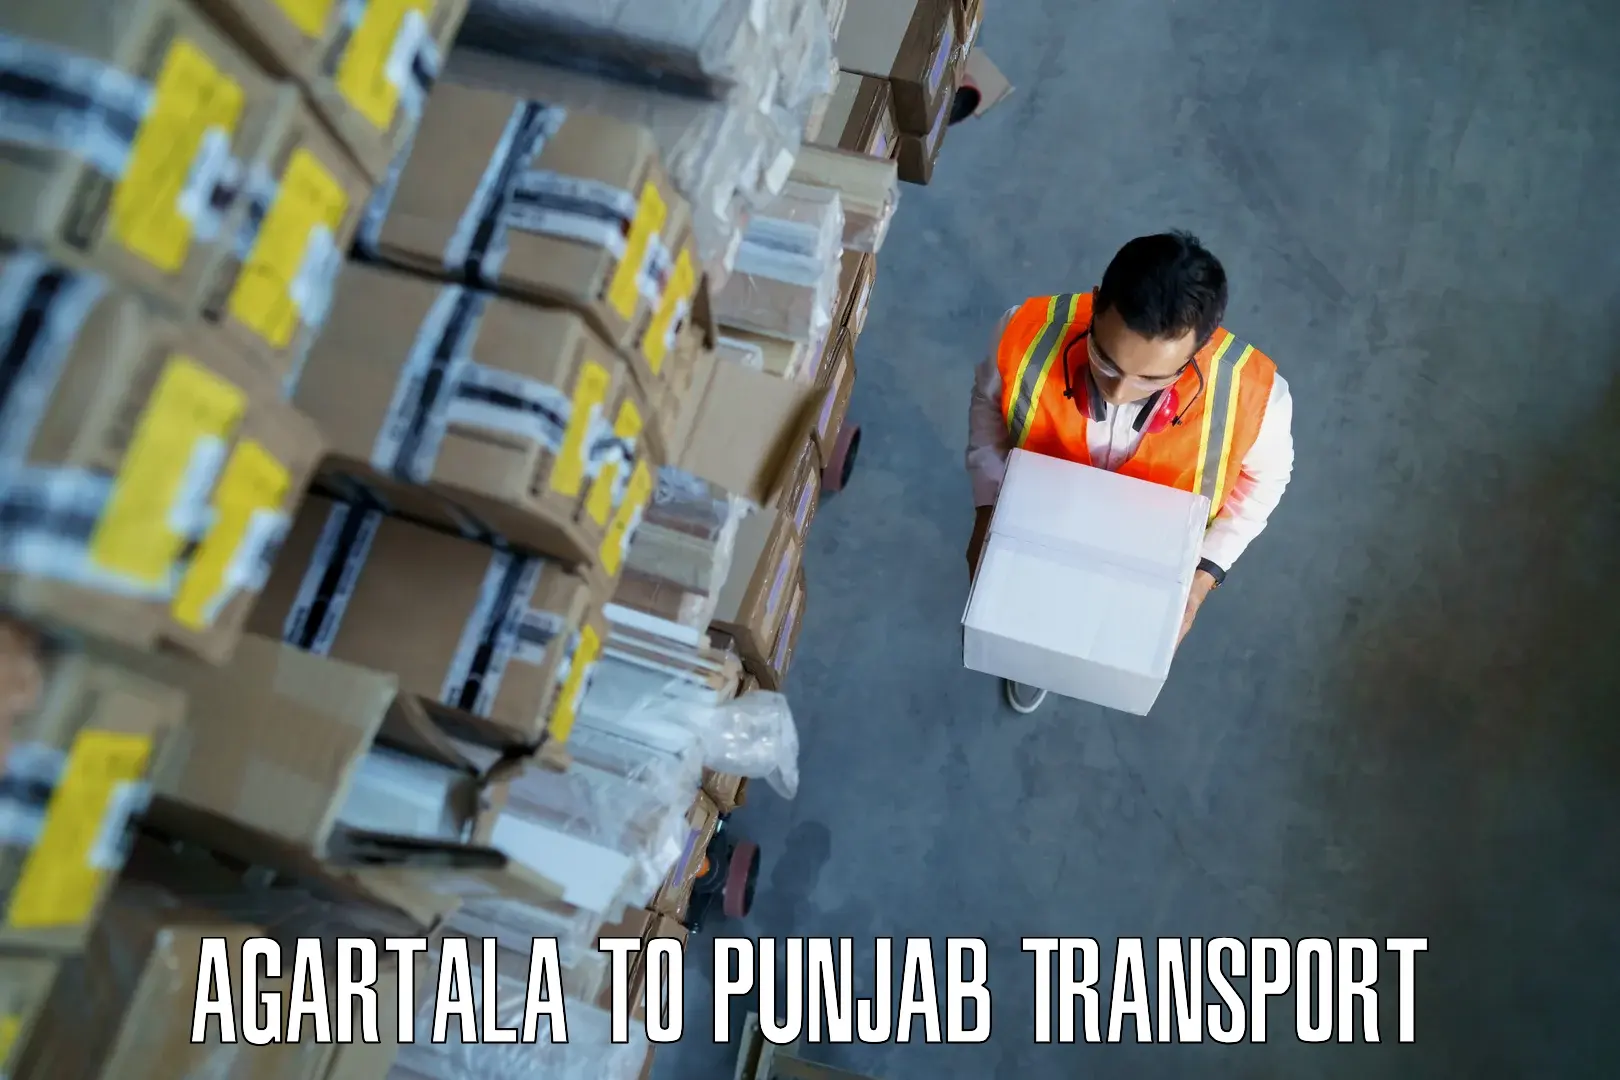 Delivery service Agartala to Dhuri